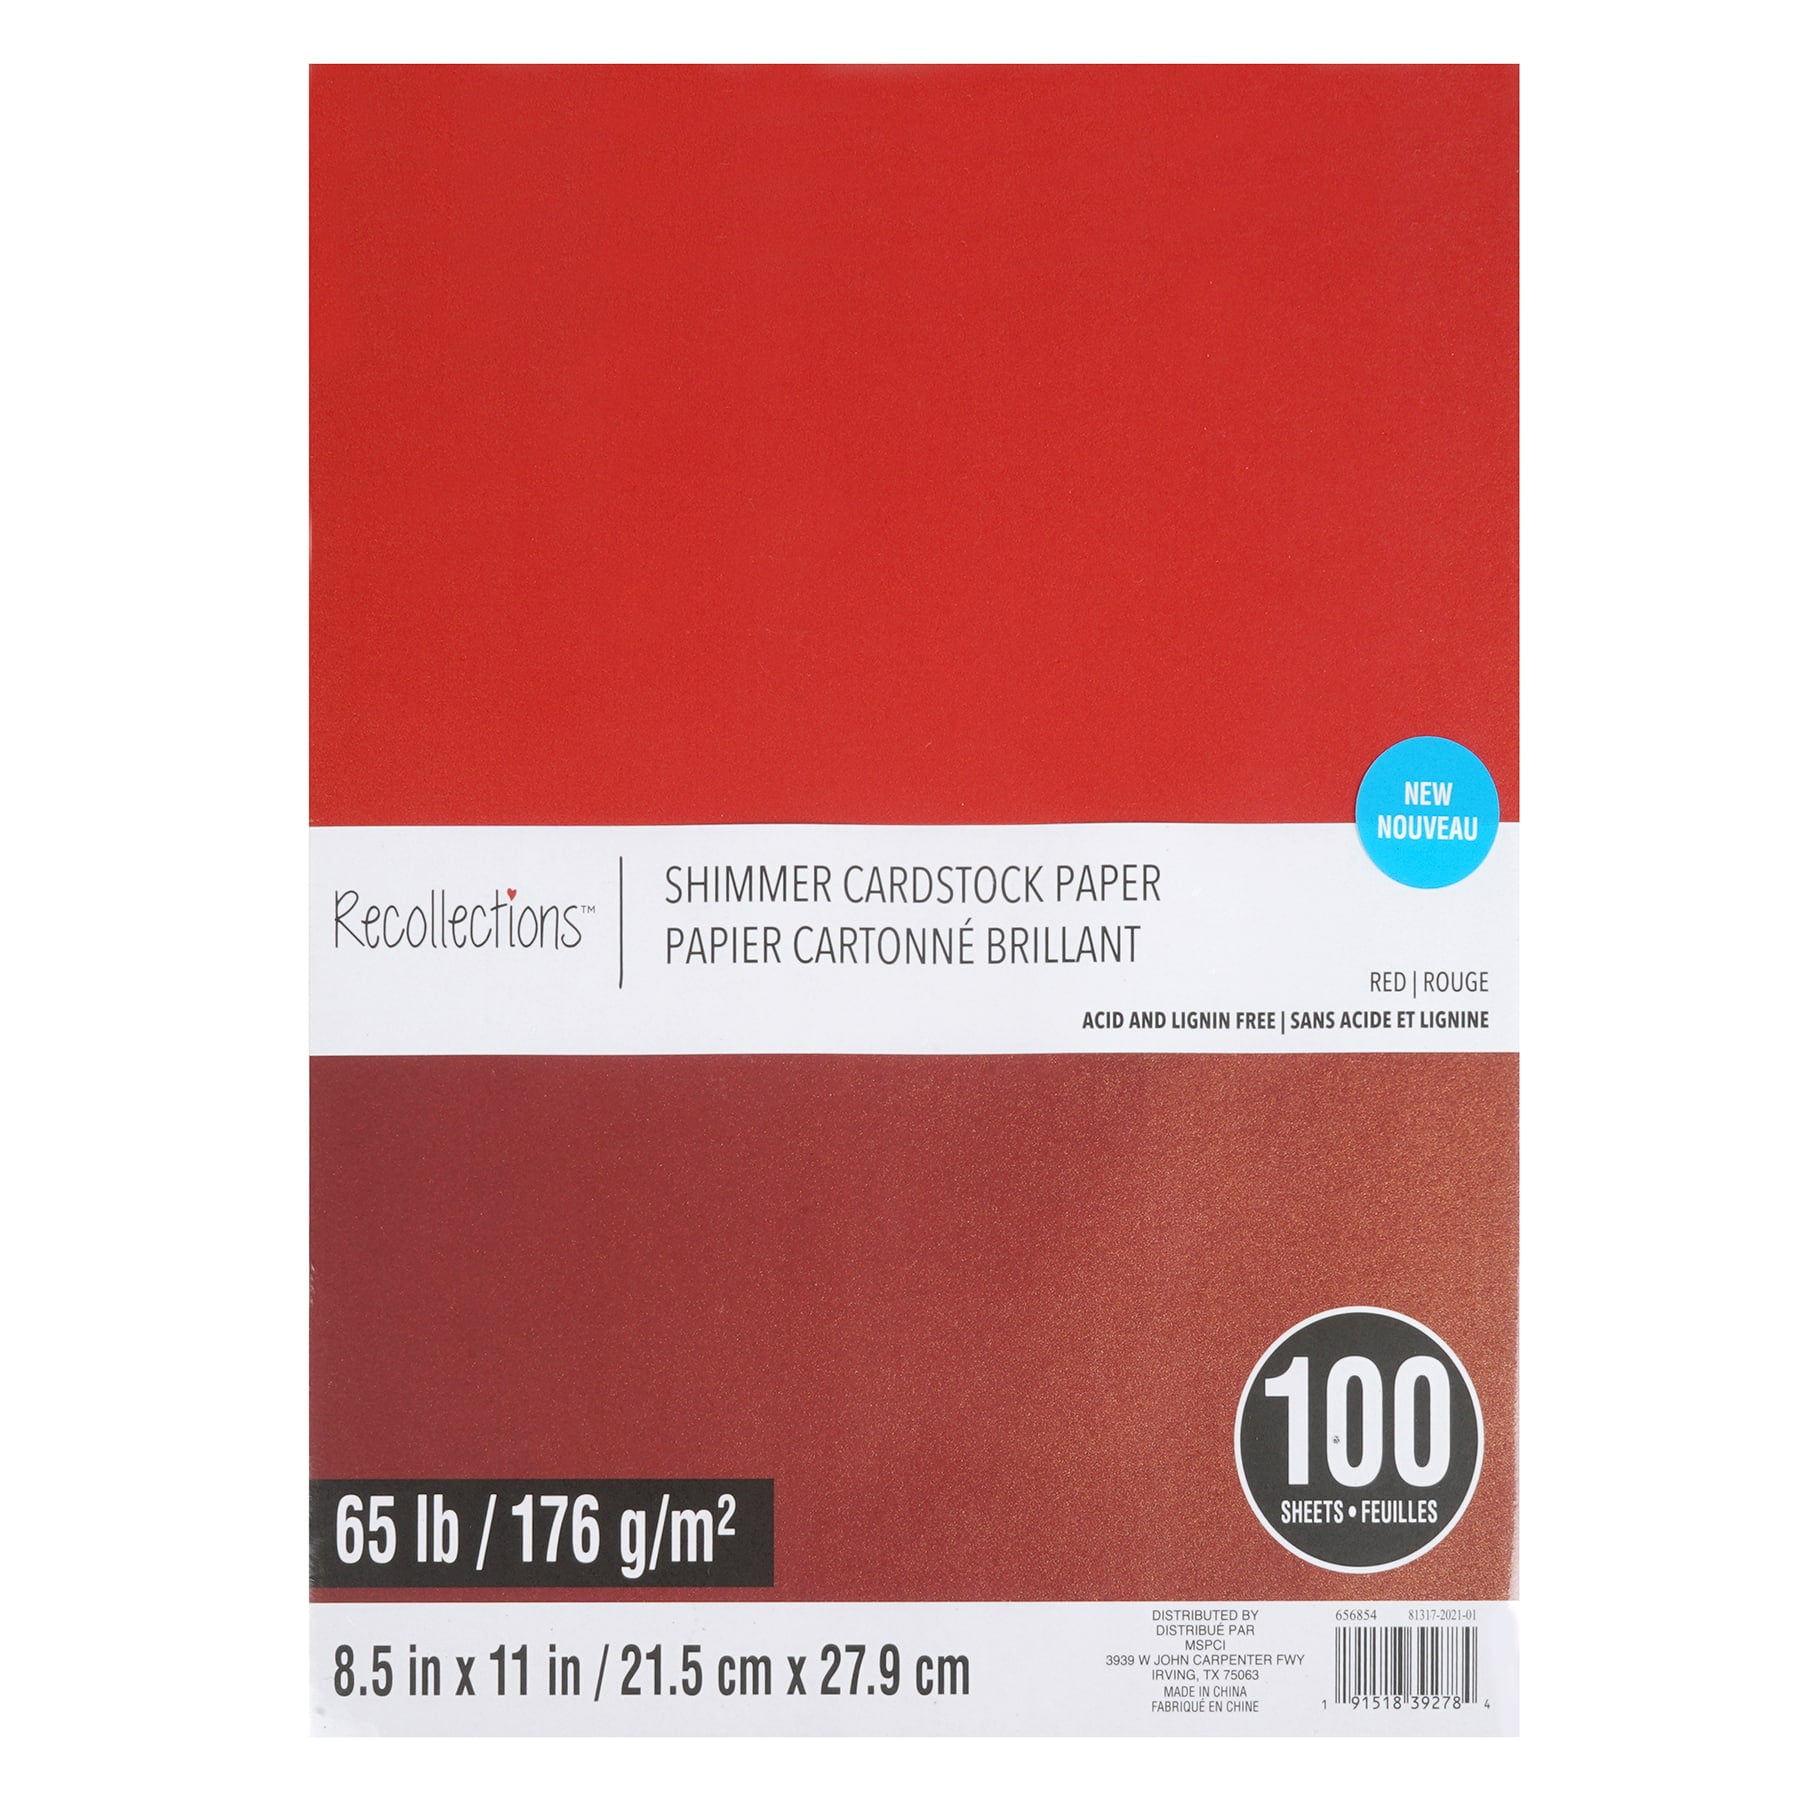 JAM Paper JAM Paper® Neon 43lb Cardstock, 8.5 x 11 Coverstock